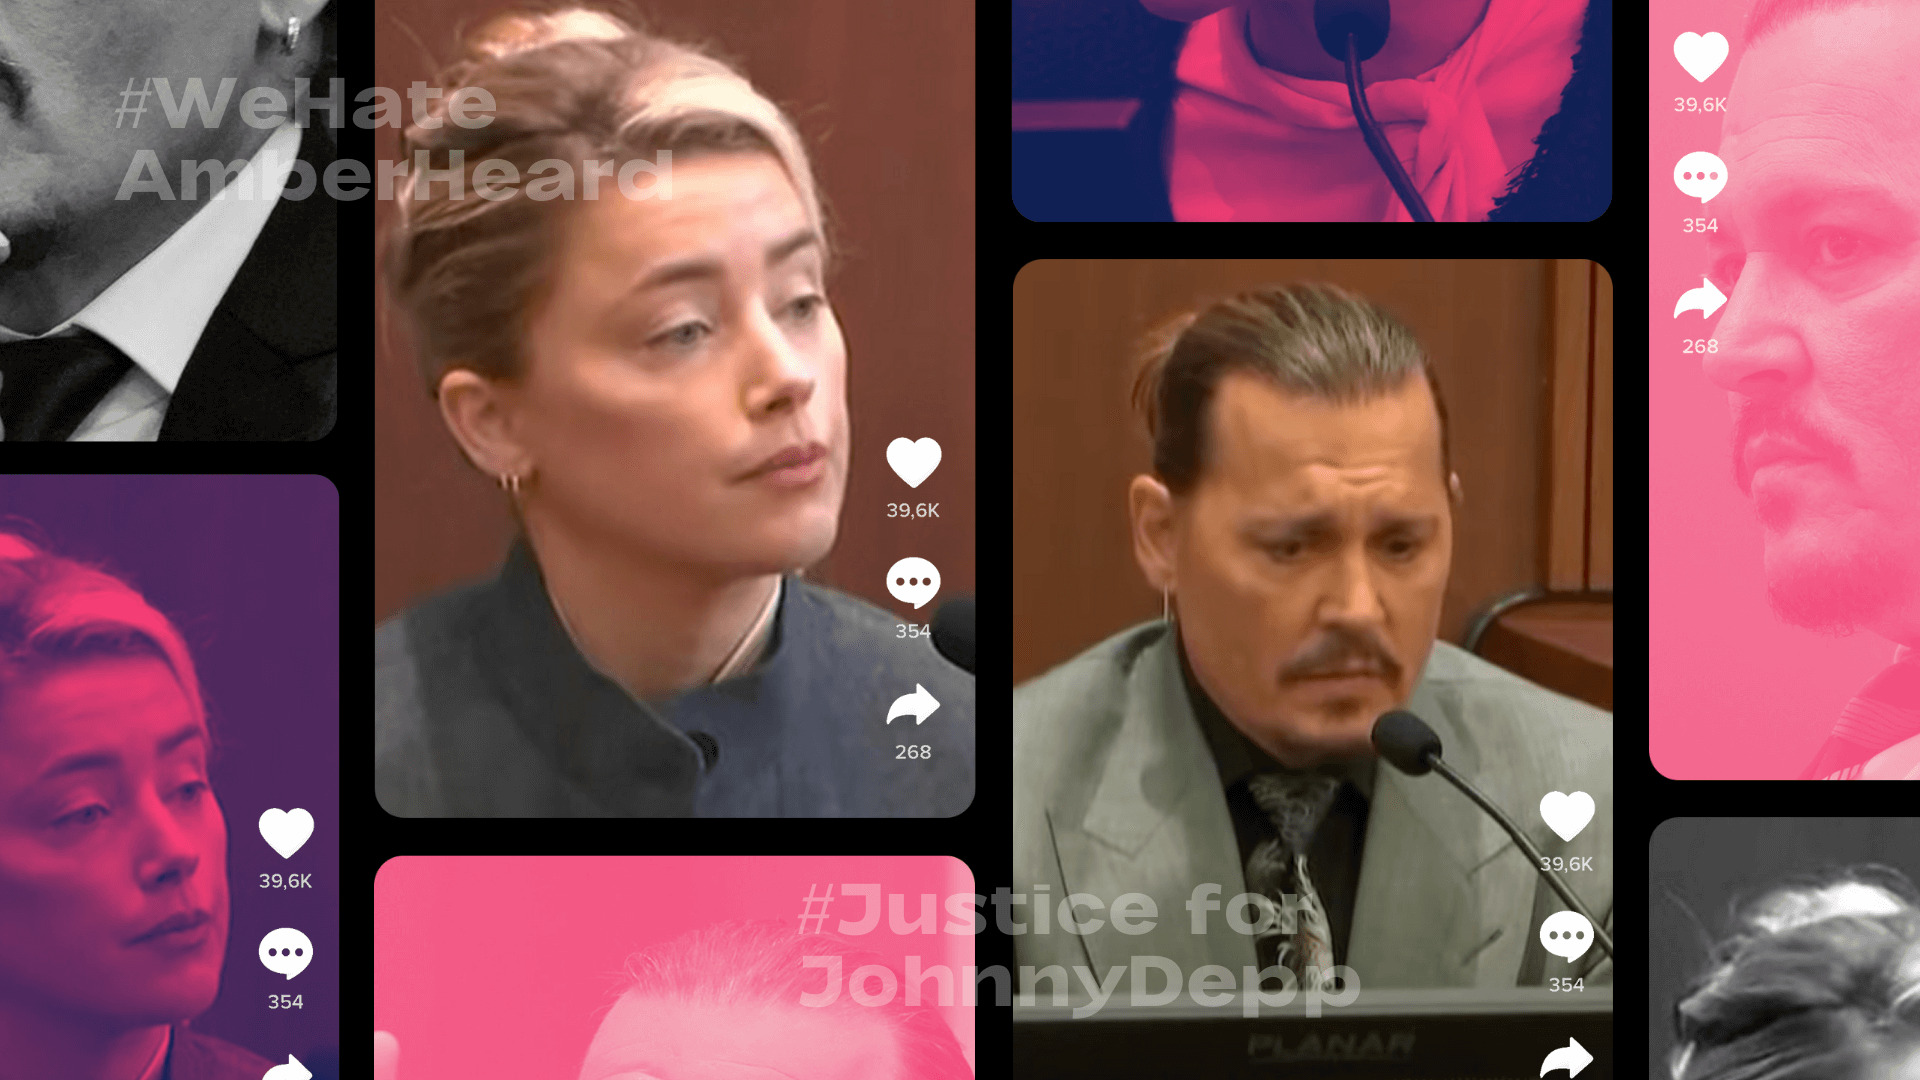 Le procès Amberd Heard contre Johnny Depp a été massivement commenté sur les réseaux sociaux numériques.